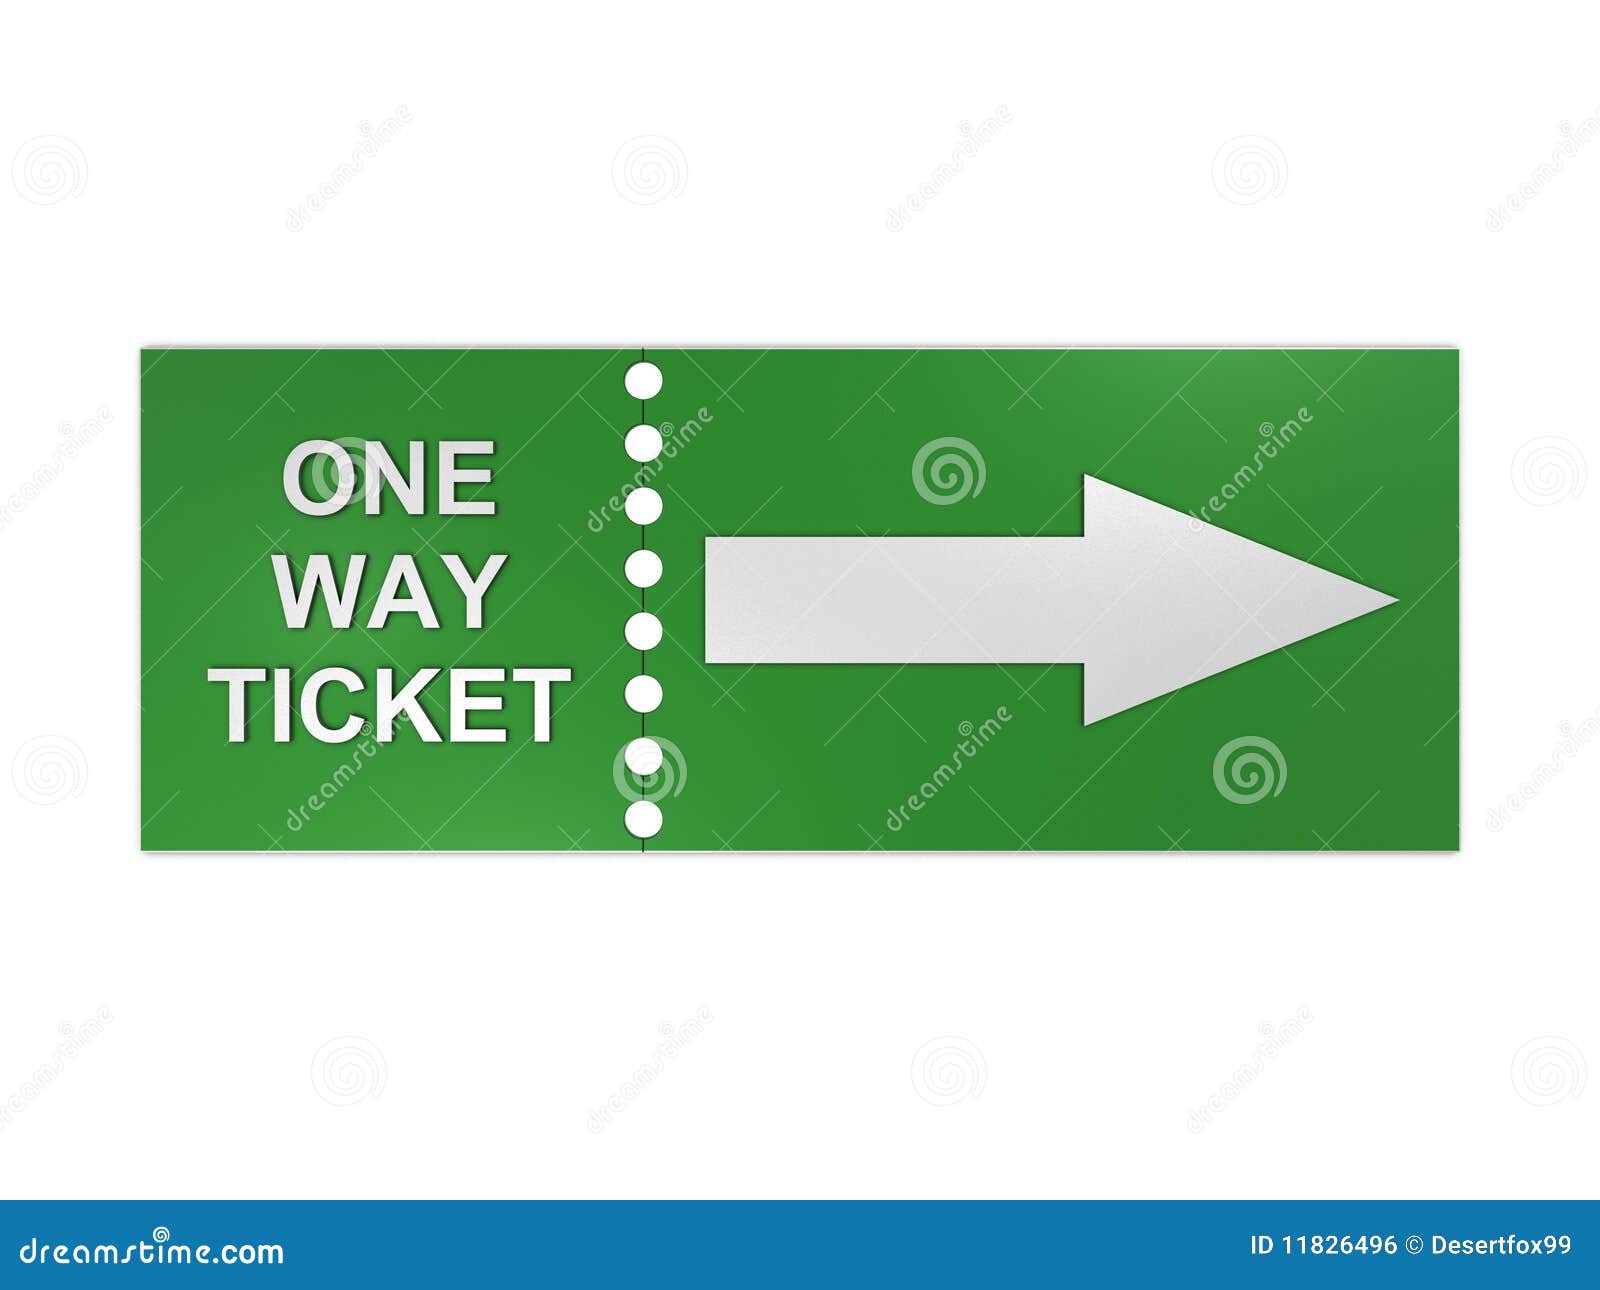 one-way-ticket-11826496.jpg